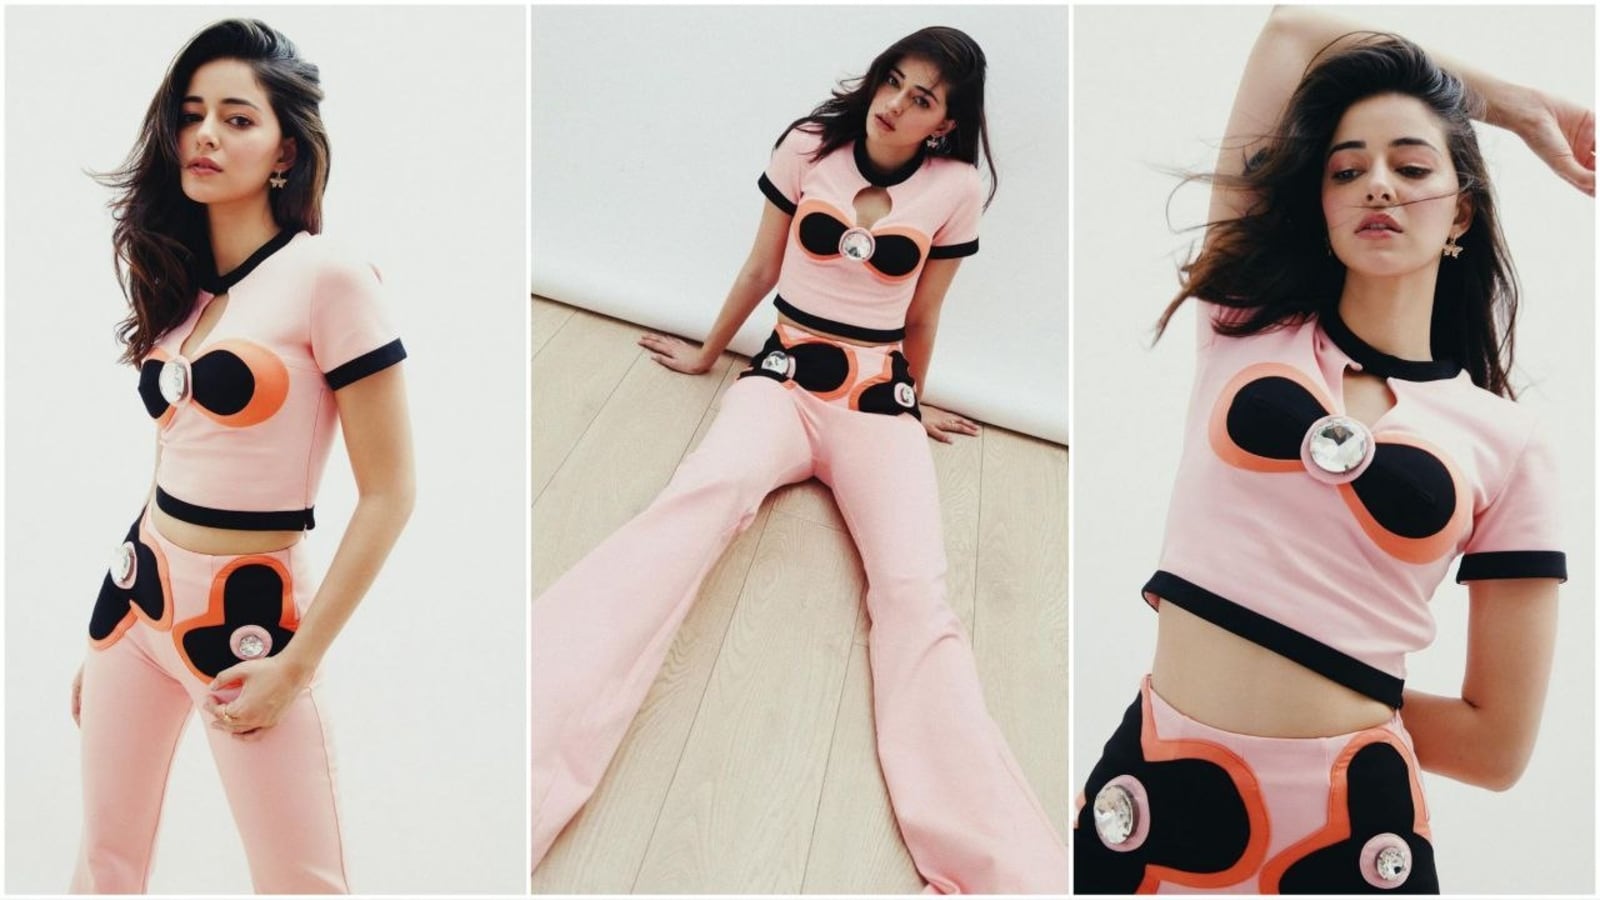 अनन्या पांडे ने ट्रेंडी कलरब्लॉक आउटफिट में अपने स्टाइलिश लुक से फैशन की दुनिया में तहलका मचा दिया है। इसकी कीमत ₹68k है